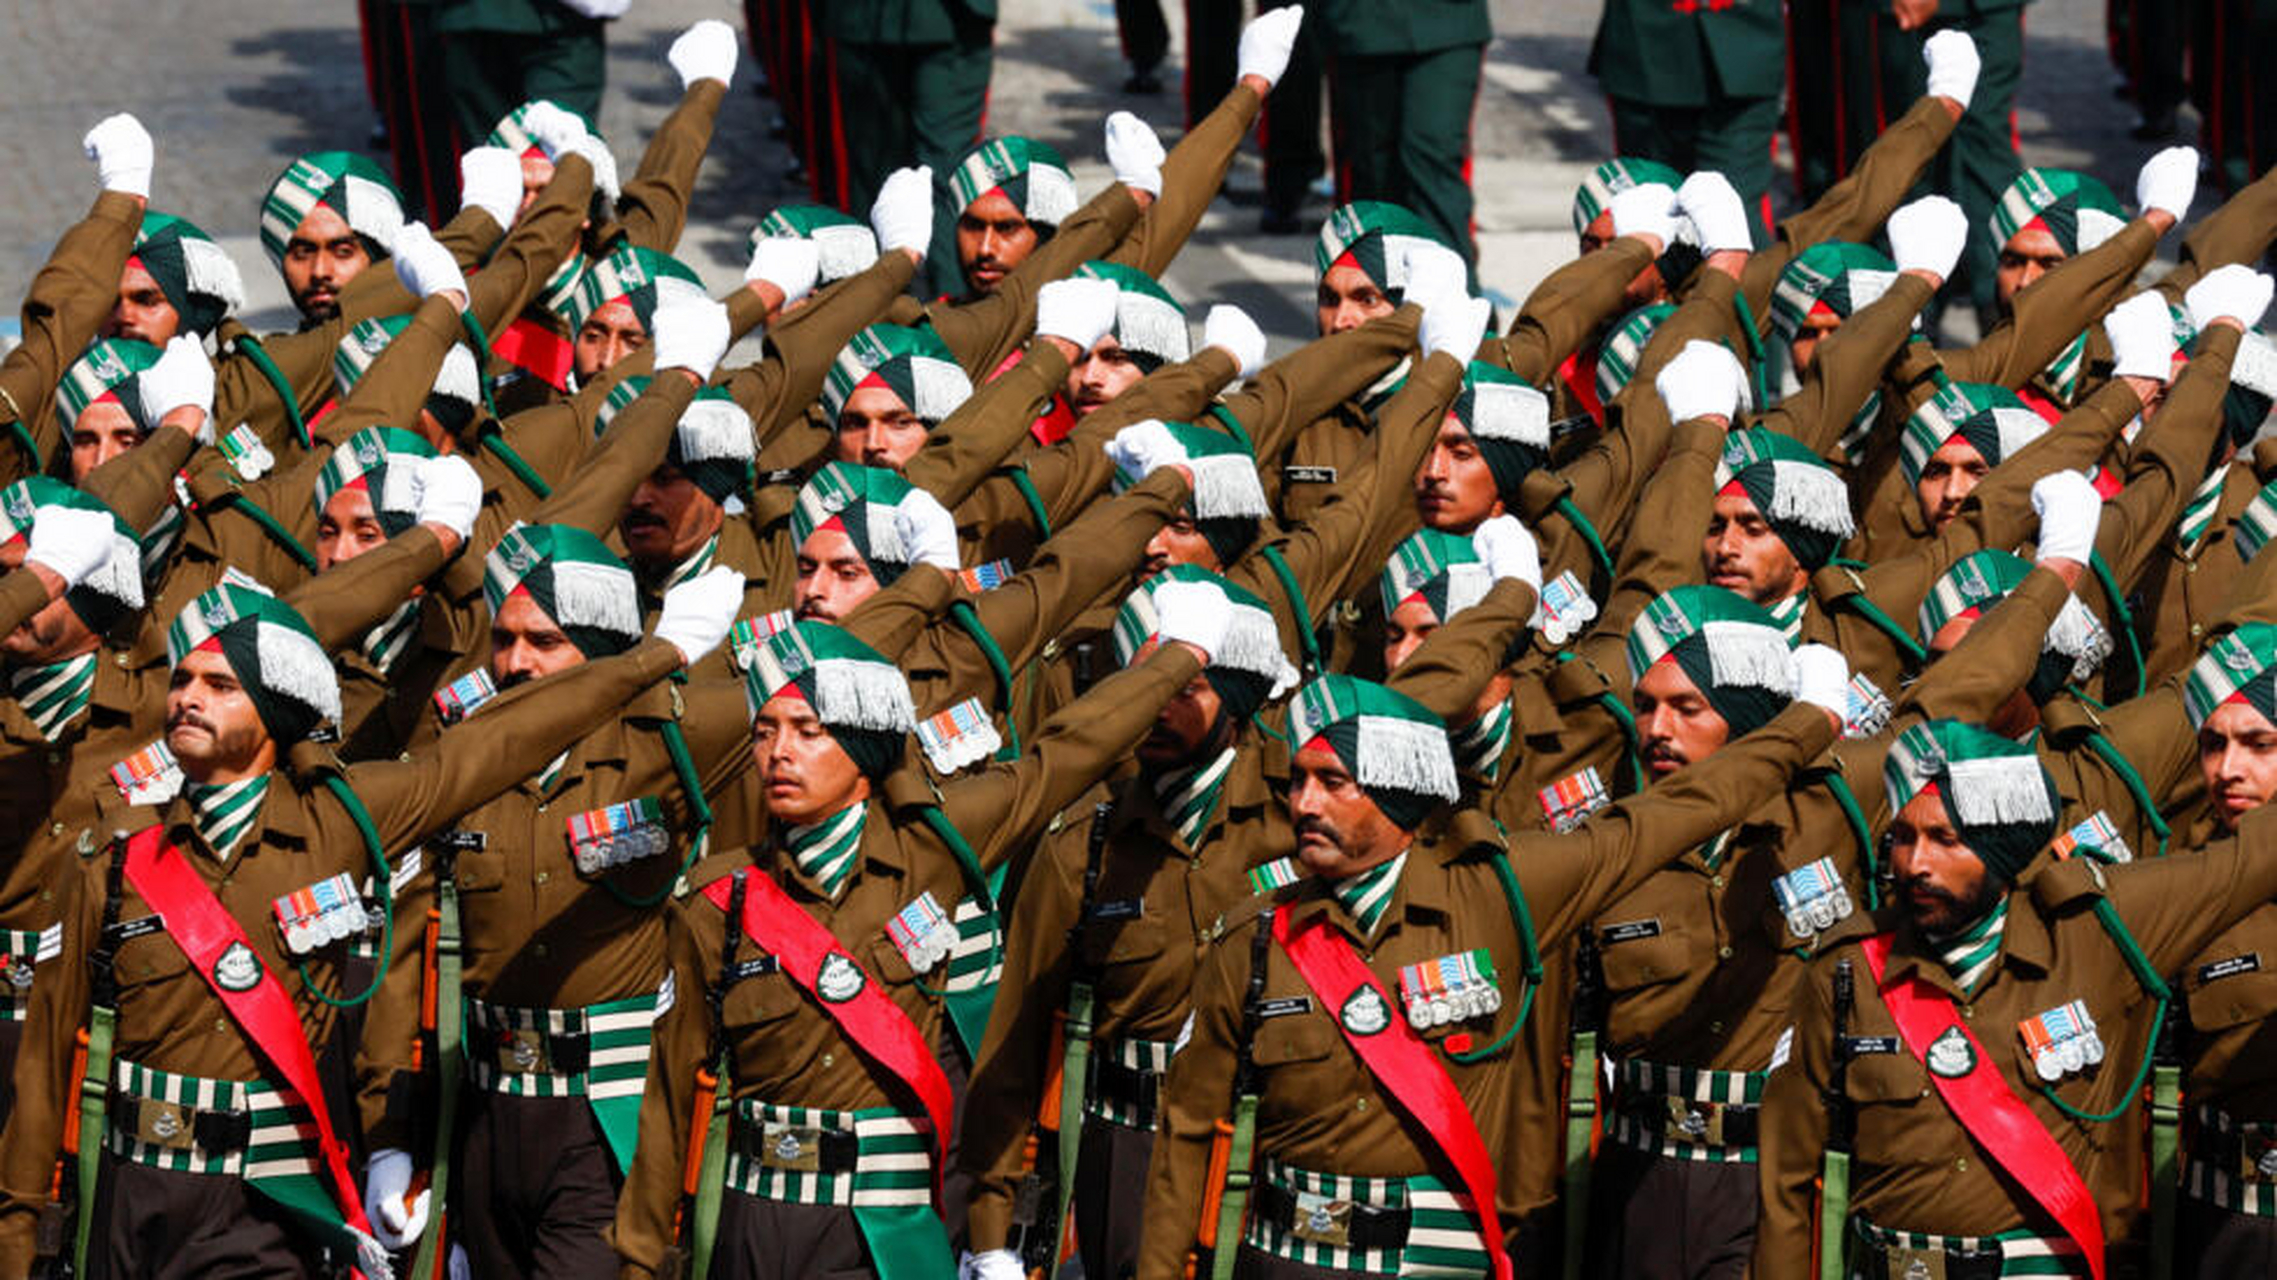 印度总理受邀参加,同时一支由269名印度三军仪仗队组成的队伍参加了